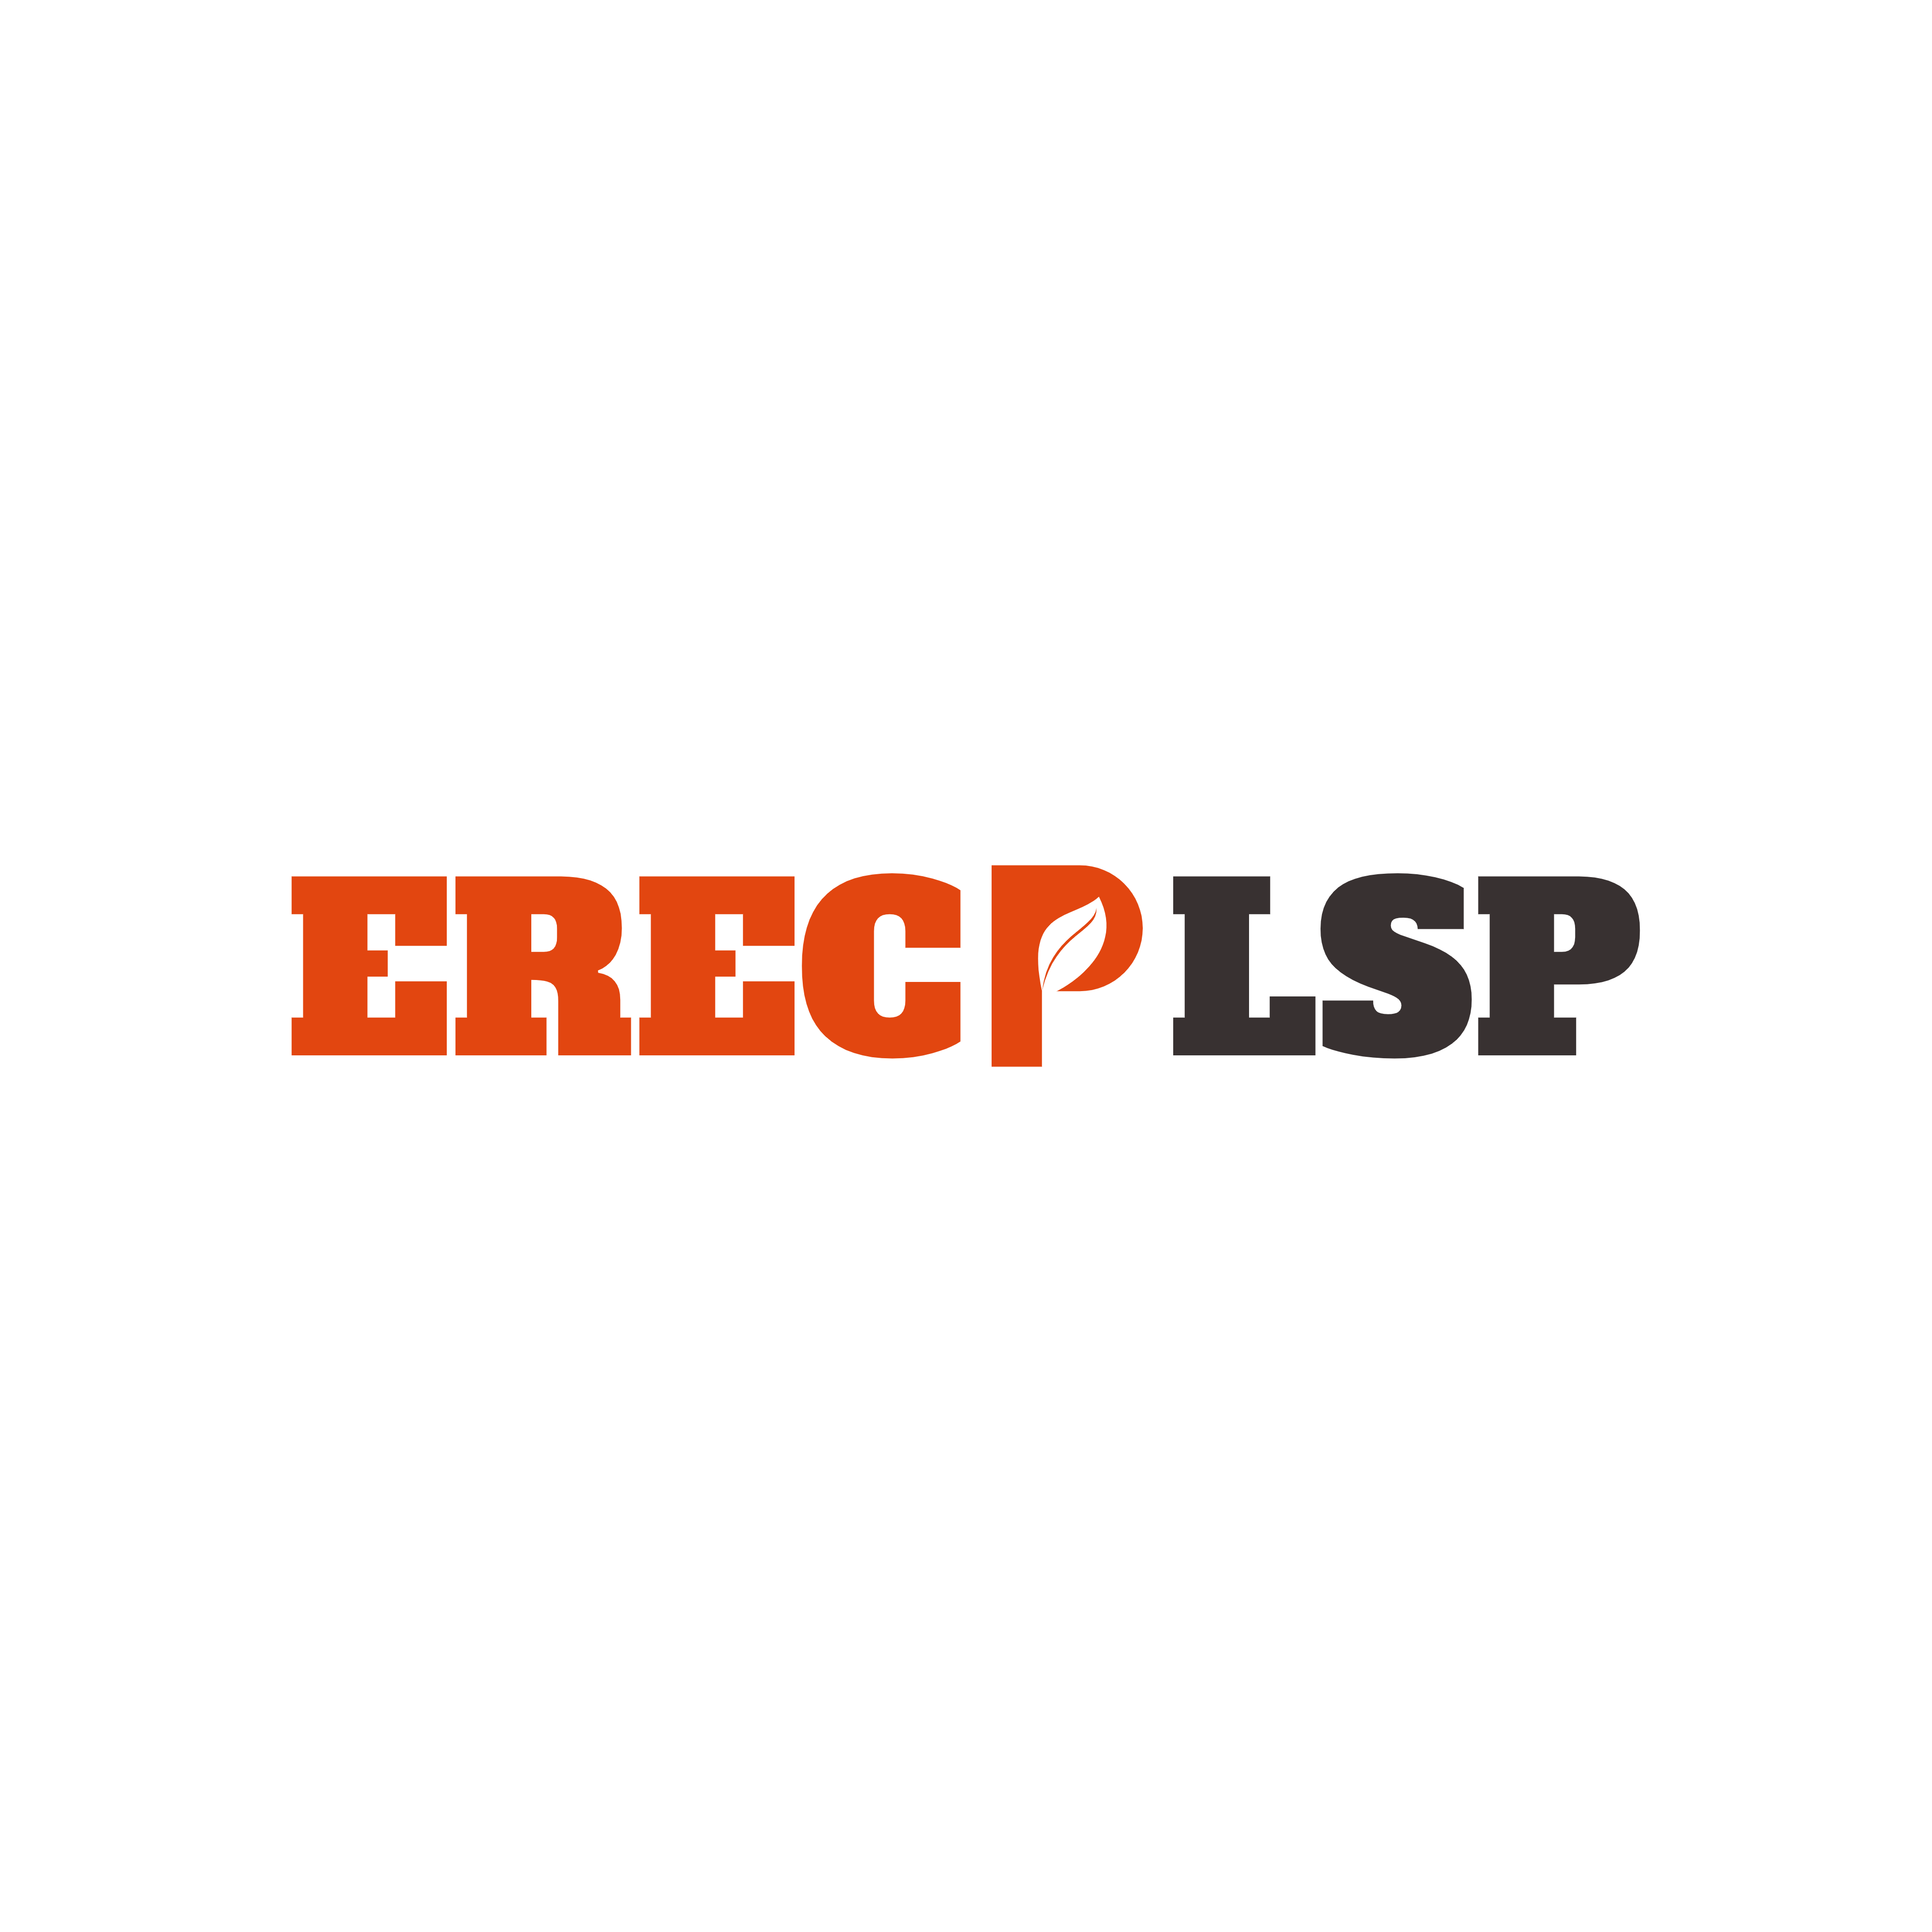 logo-erecplsp-1